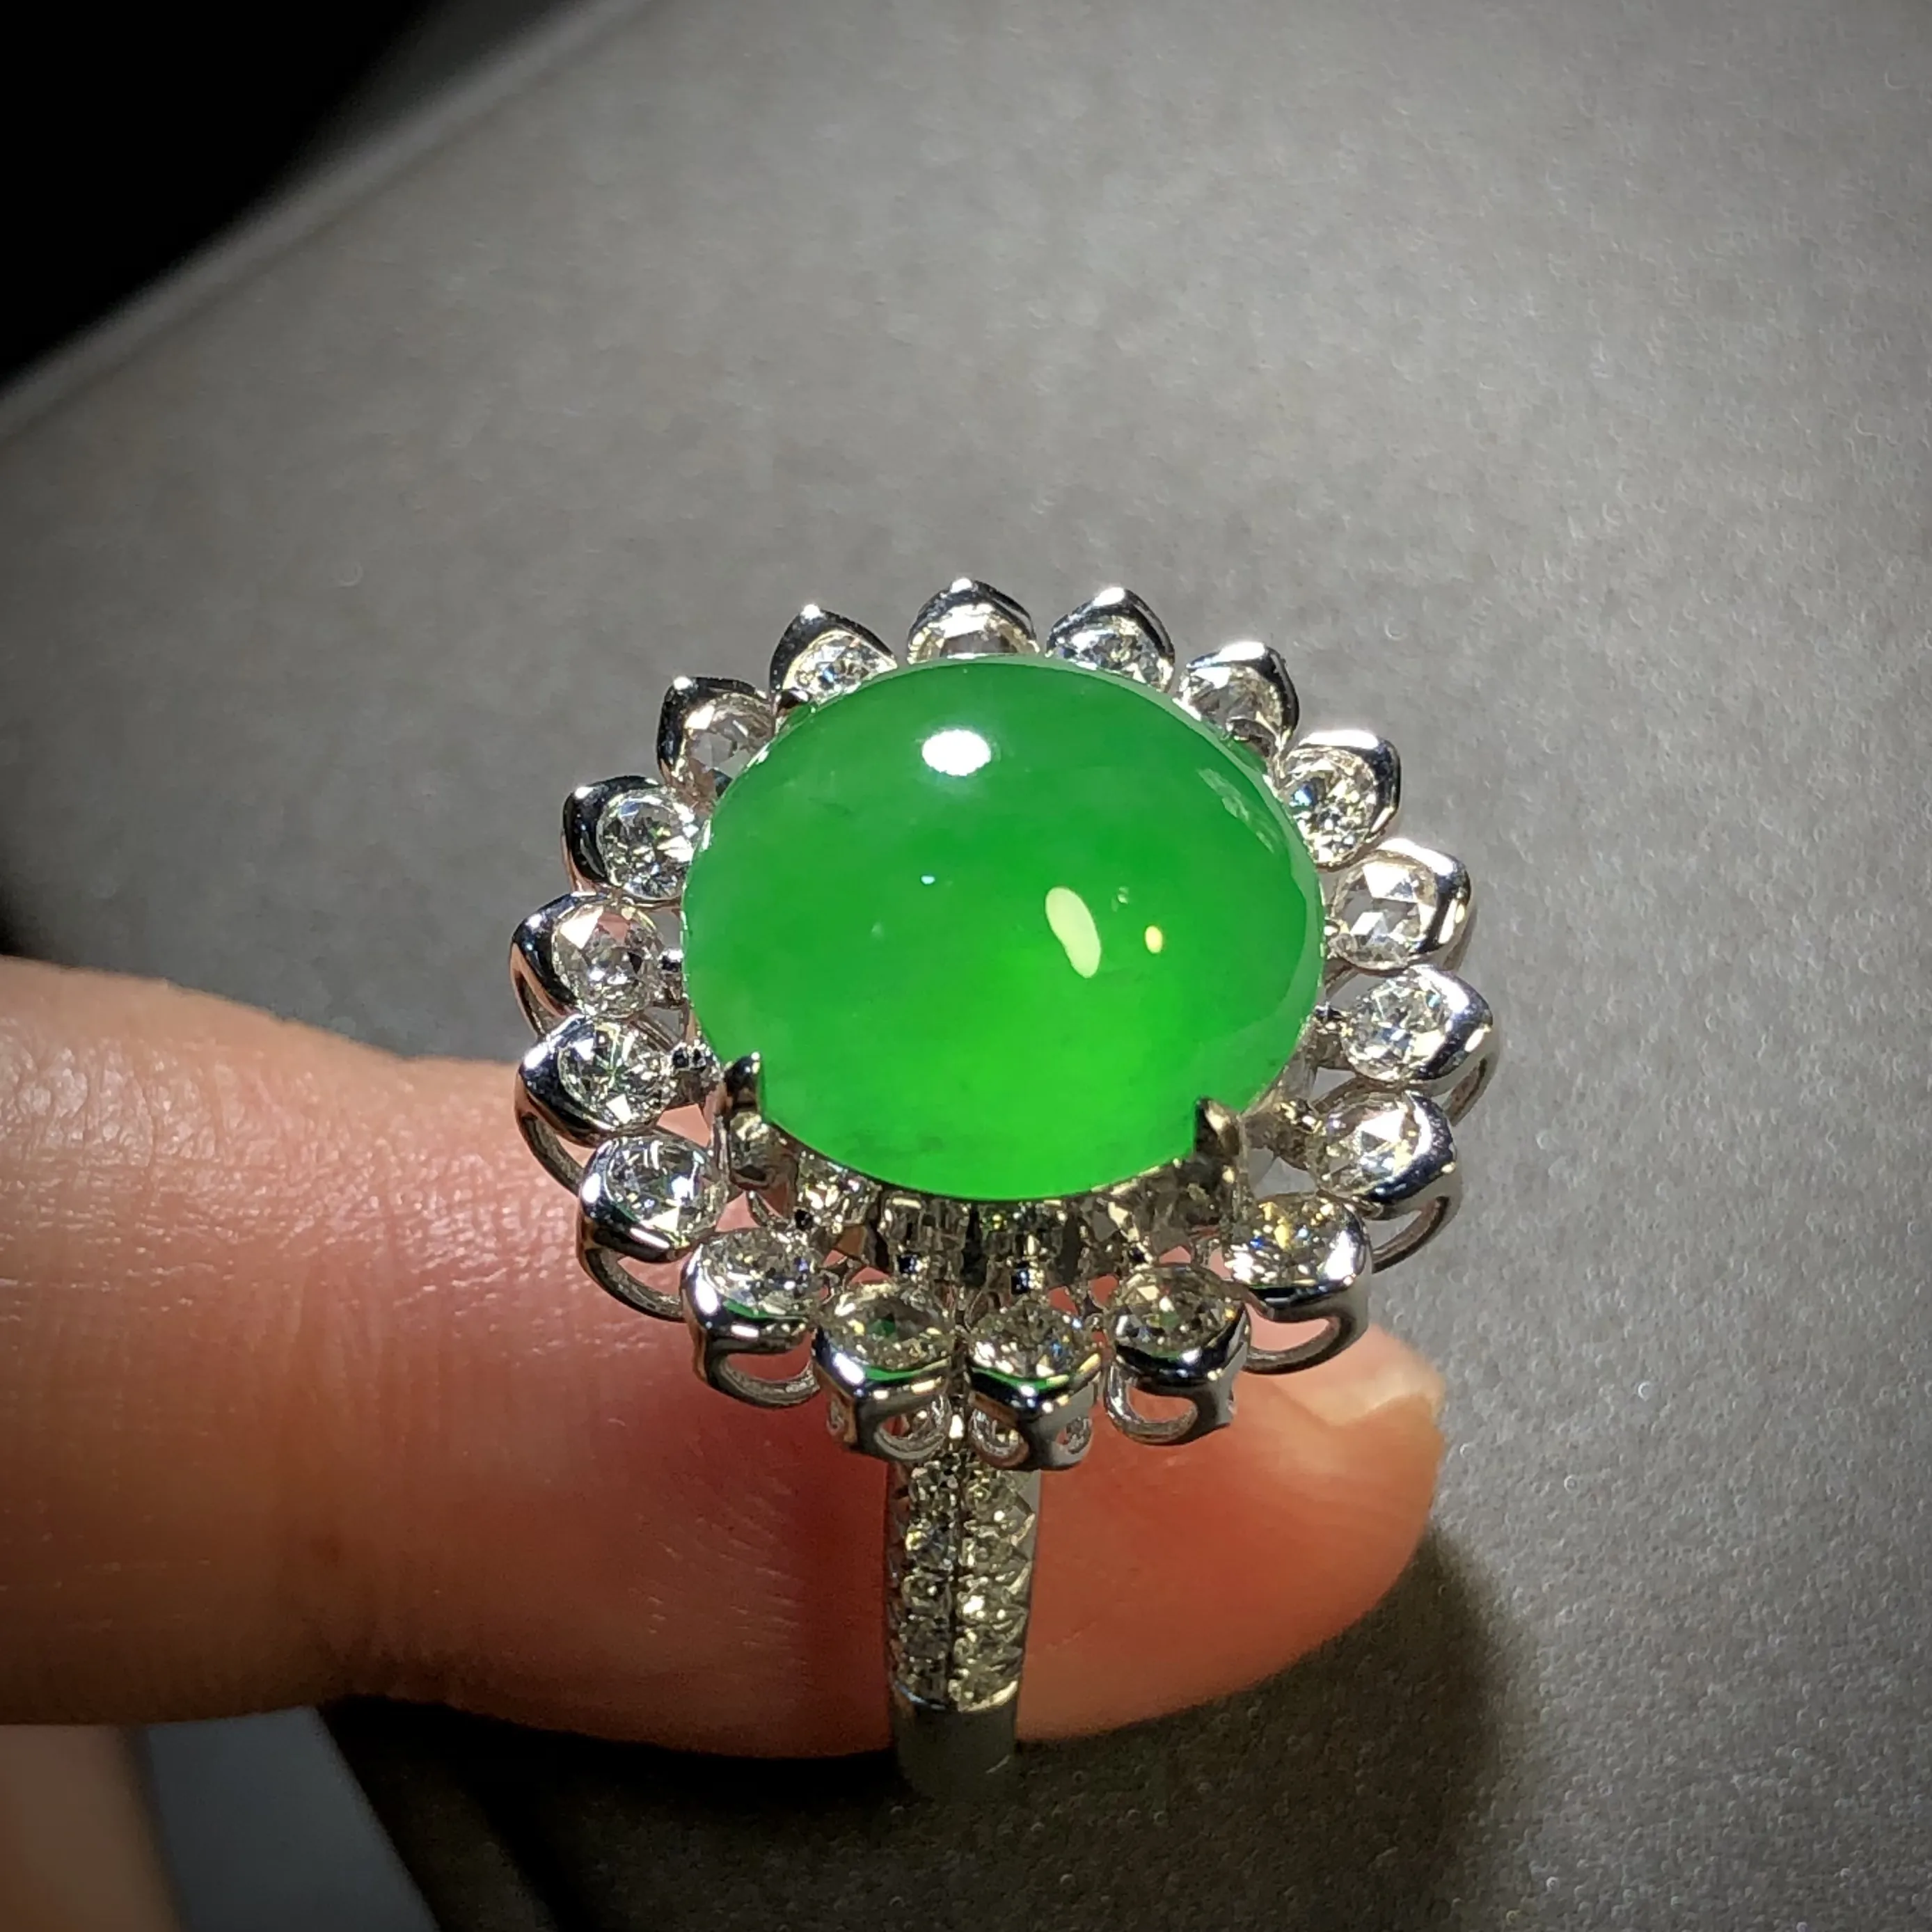 高质量阳绿翡翠绿蛋面戒指，
裸石12-12-6mm，
13.5#，18K金，南非钻，